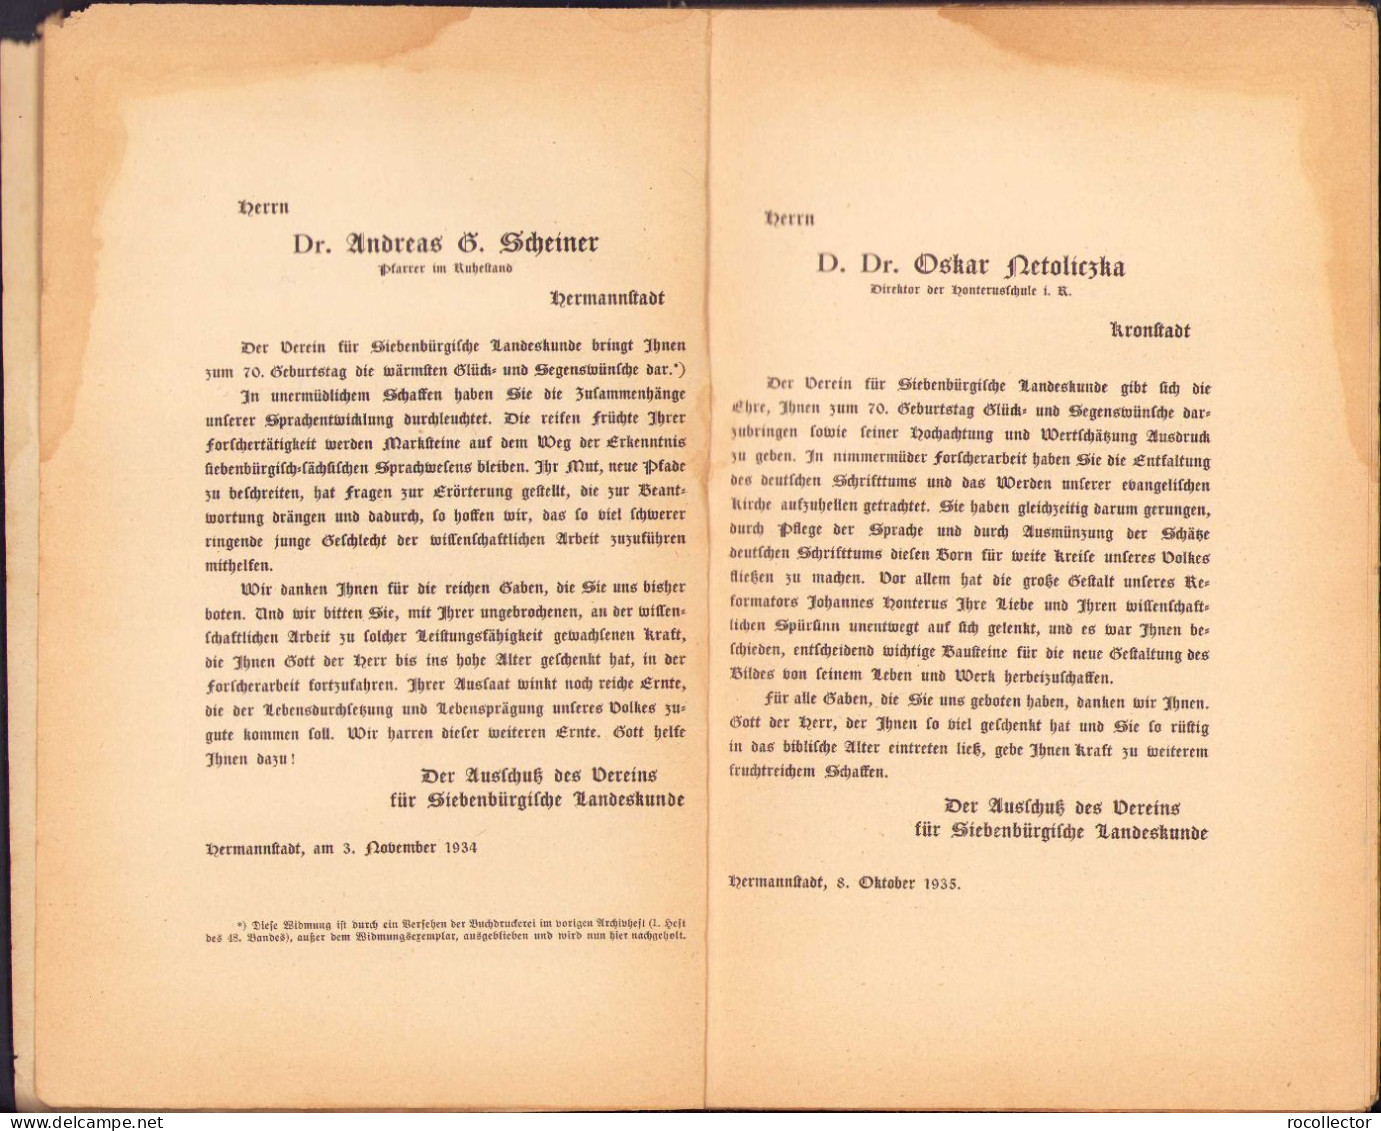 Die Deutschen Landkapitel In Siebenburgen Und Ihre Dechanten 1192-1848 Von Georg Müller, Theil II, 1936 C826 - Alte Bücher